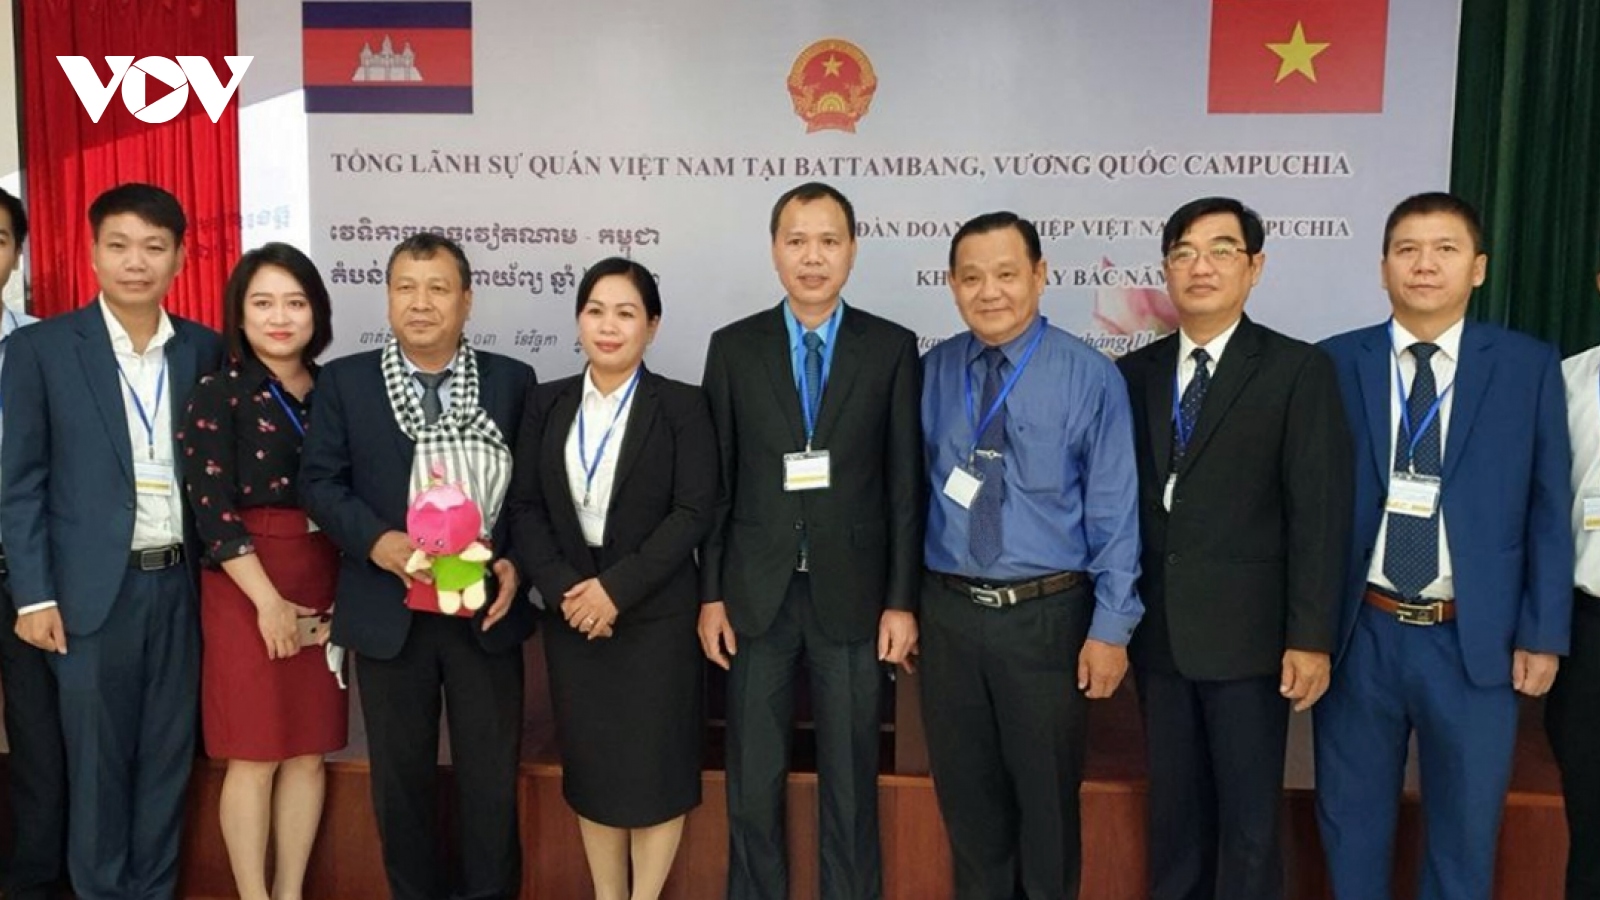 Diễn đàn Doanh nghiệp Việt Nam-Campuchia khu vực Tây Bắc Campuchia năm 2022